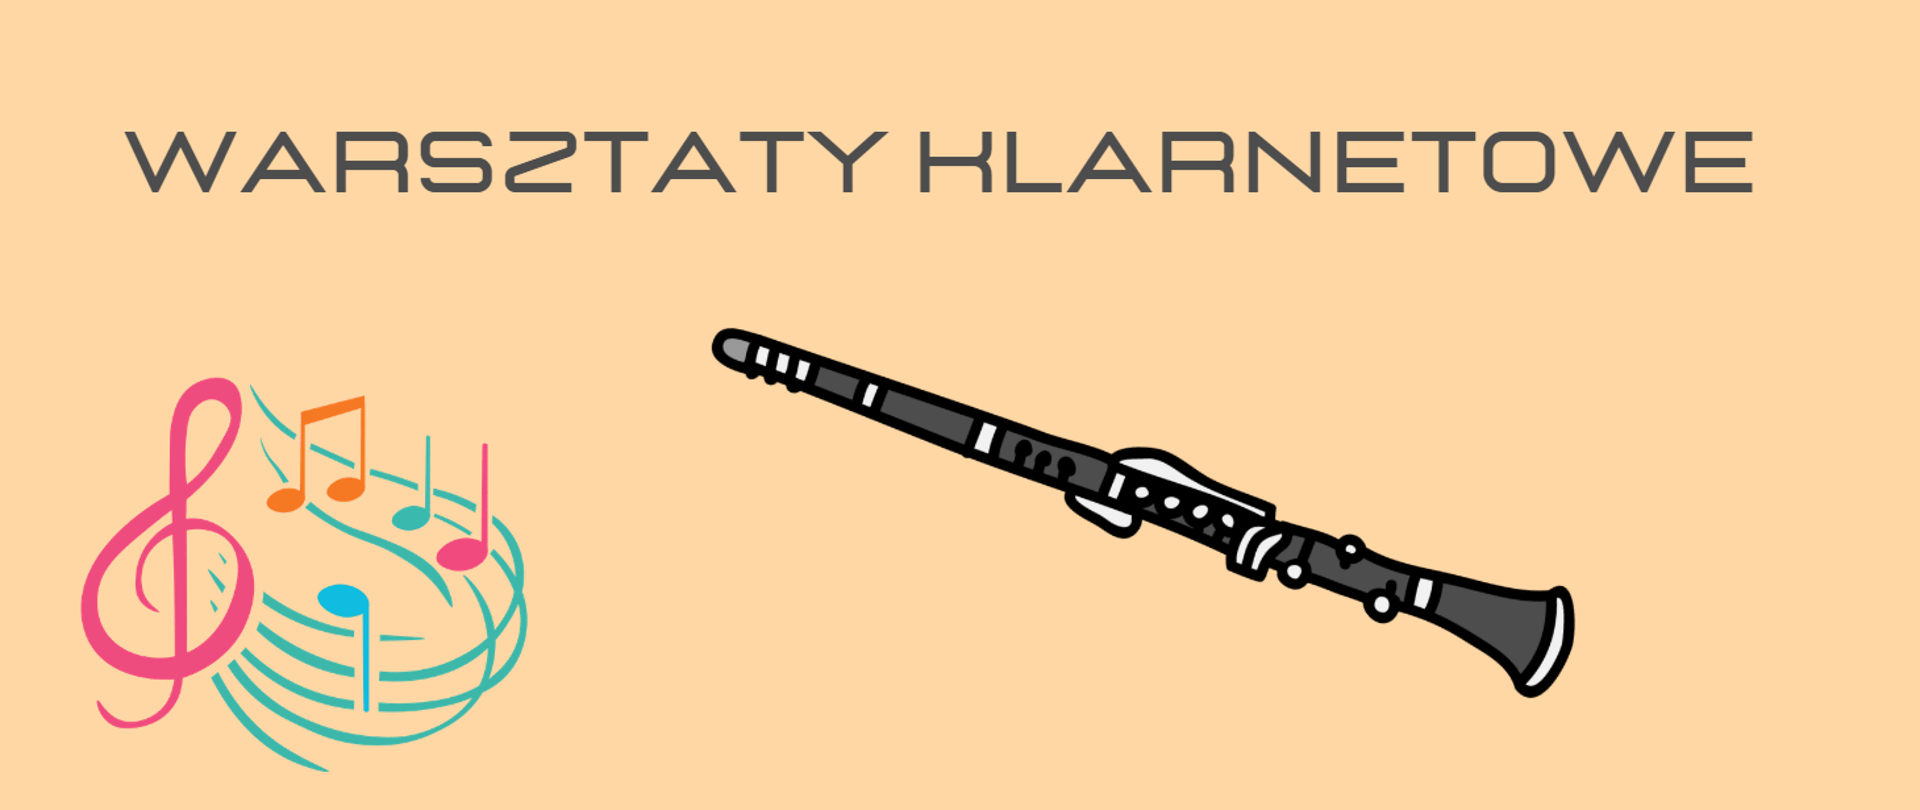 Grafika przedstawiająca na jasnopomarańczowym tle rysunek klarnetu oraz klucz wiolinowy z zakręconą pięciolinią i nutami. Na górze napis WARSZTATY KLARNETOWE.